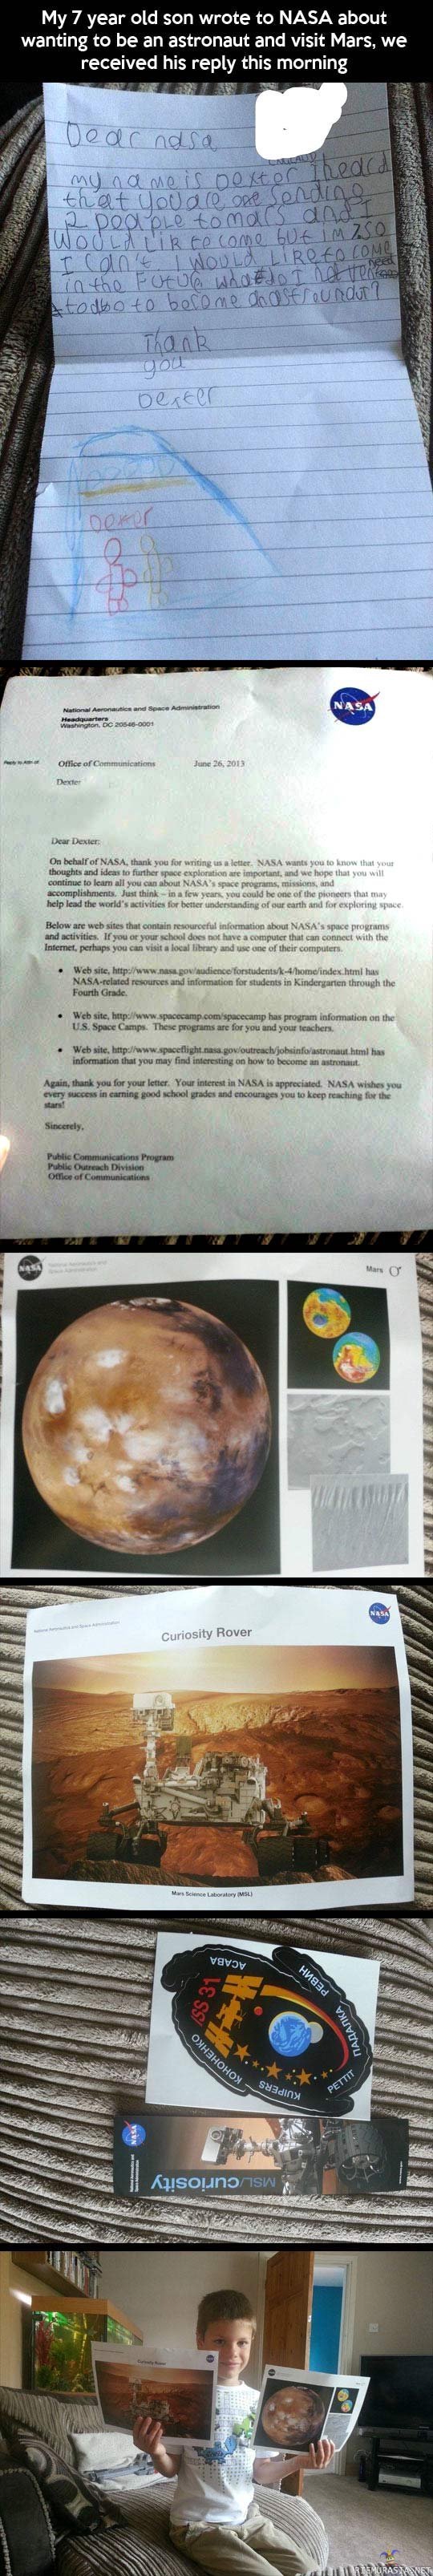 Tuleva astronautti - NASA vastasi pikkupojan kirjeeseen